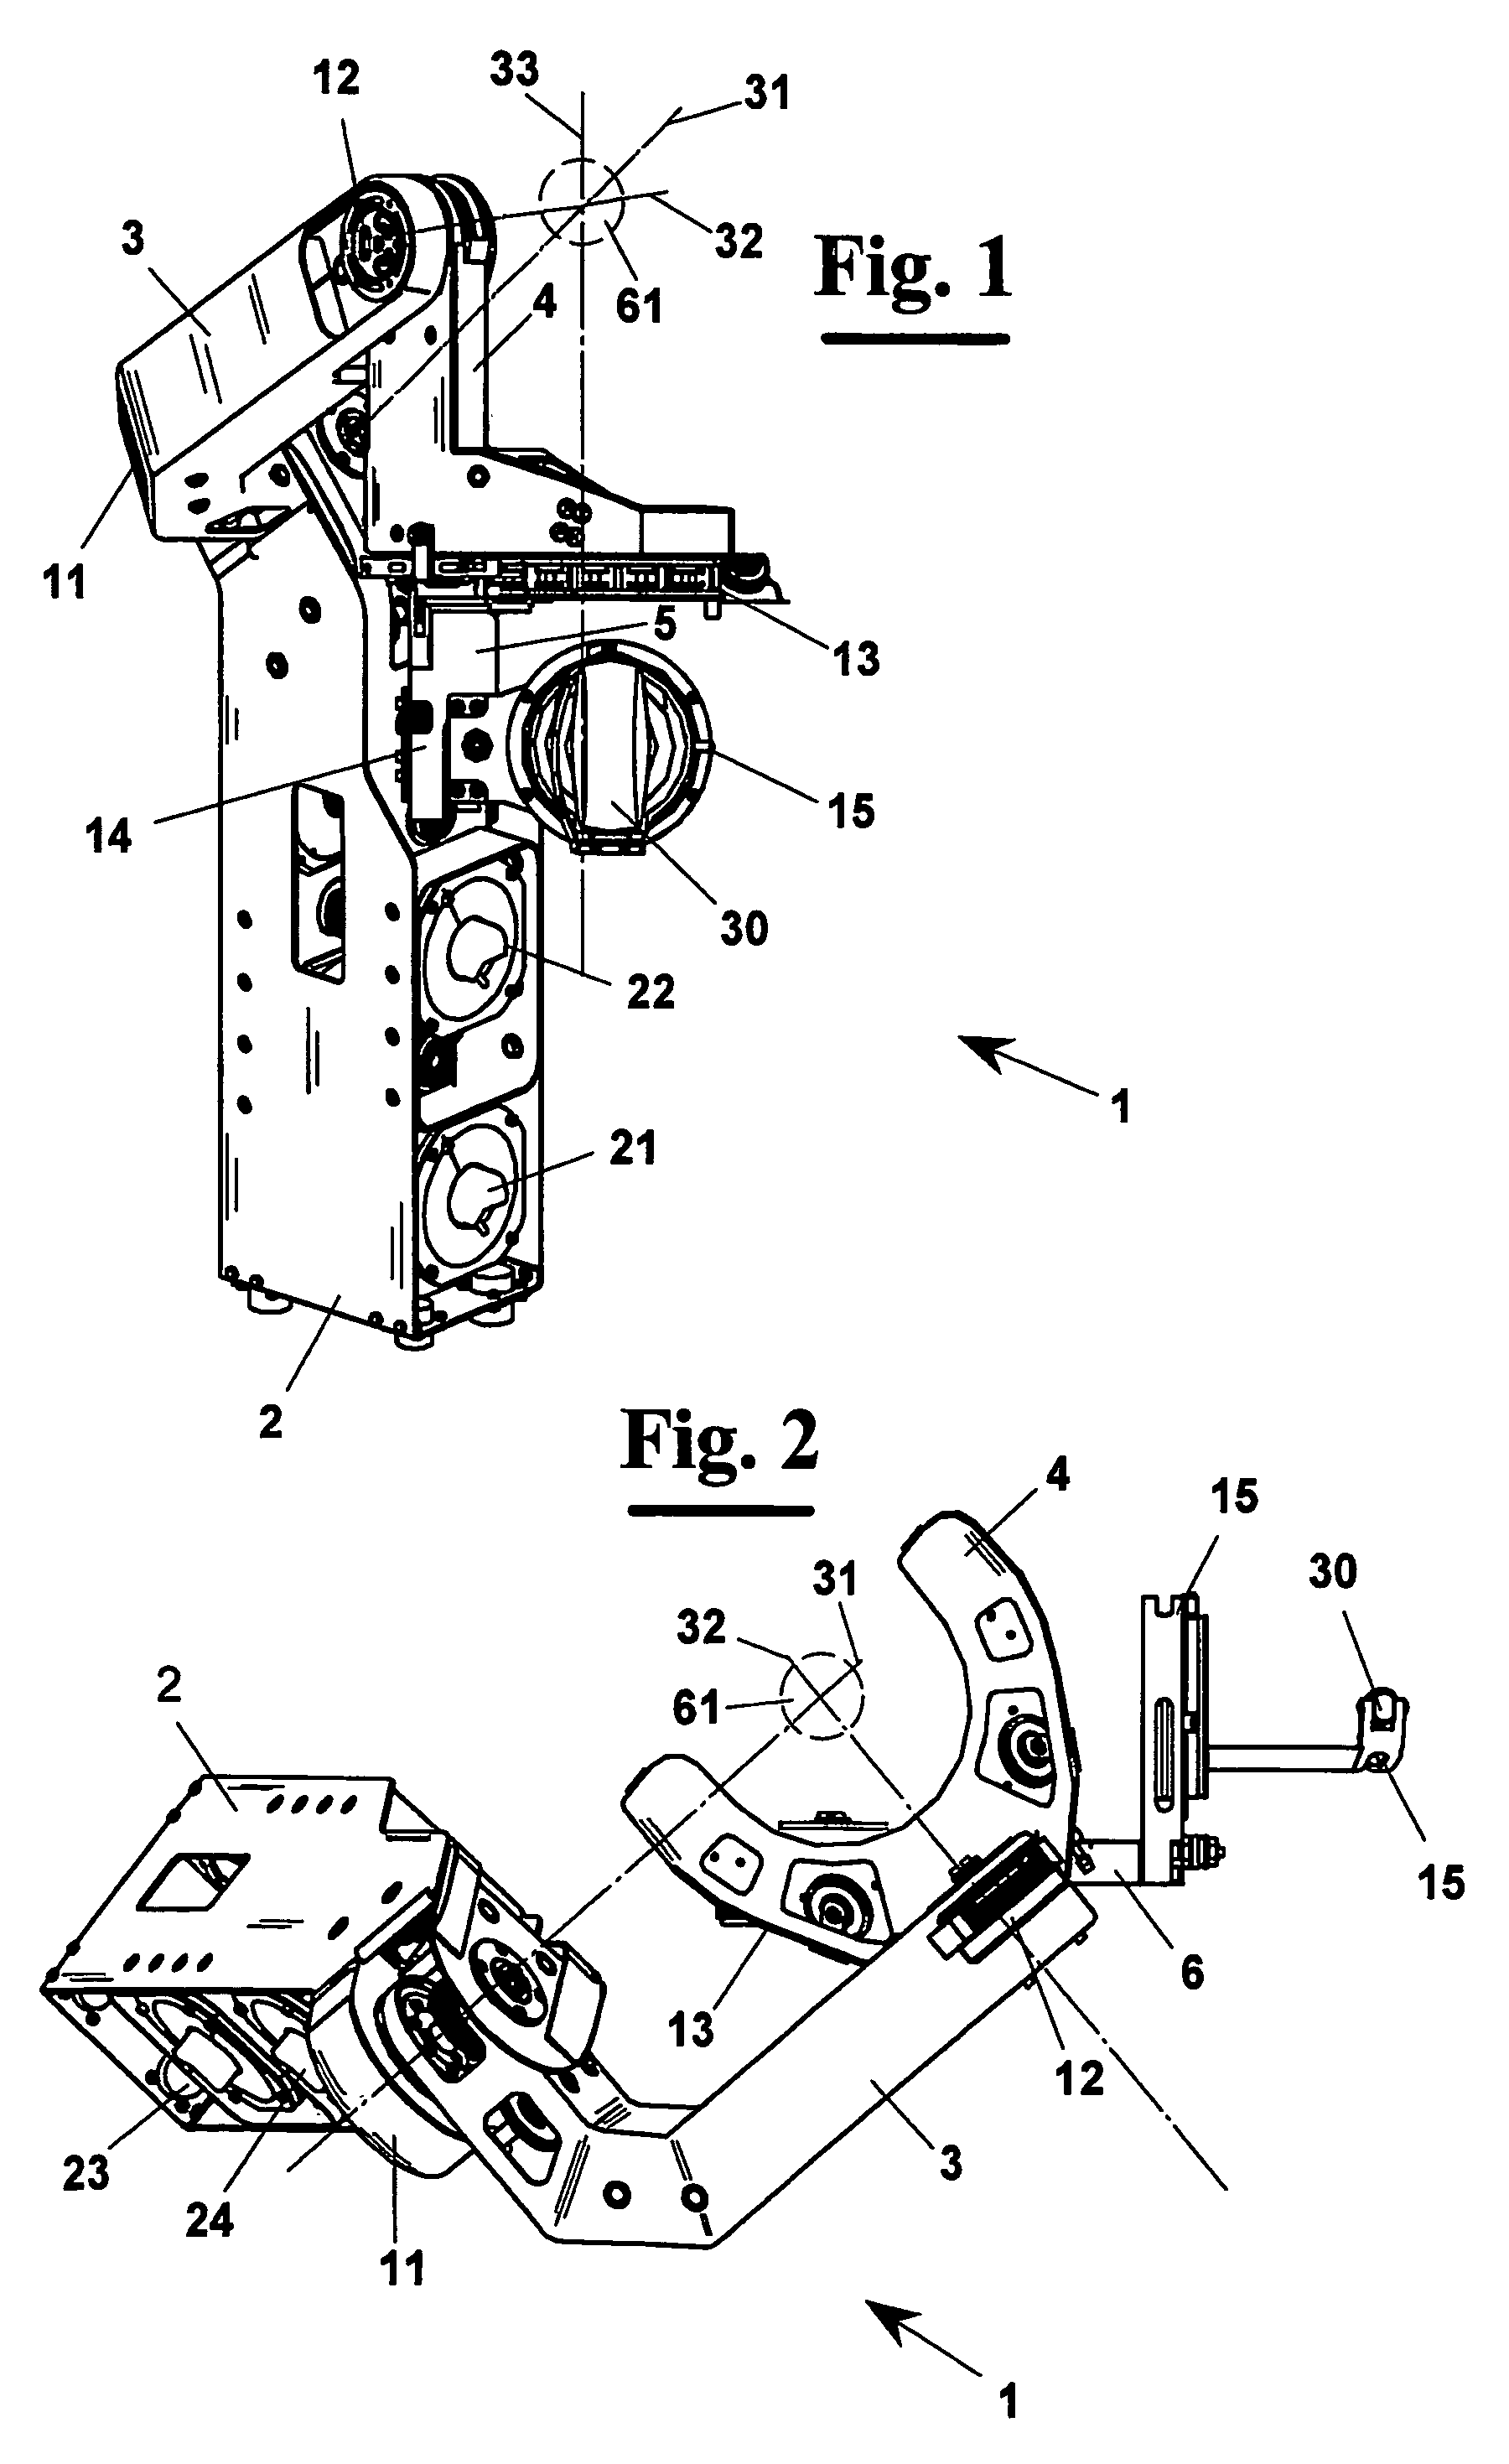 Exoskeleton interface apparatus